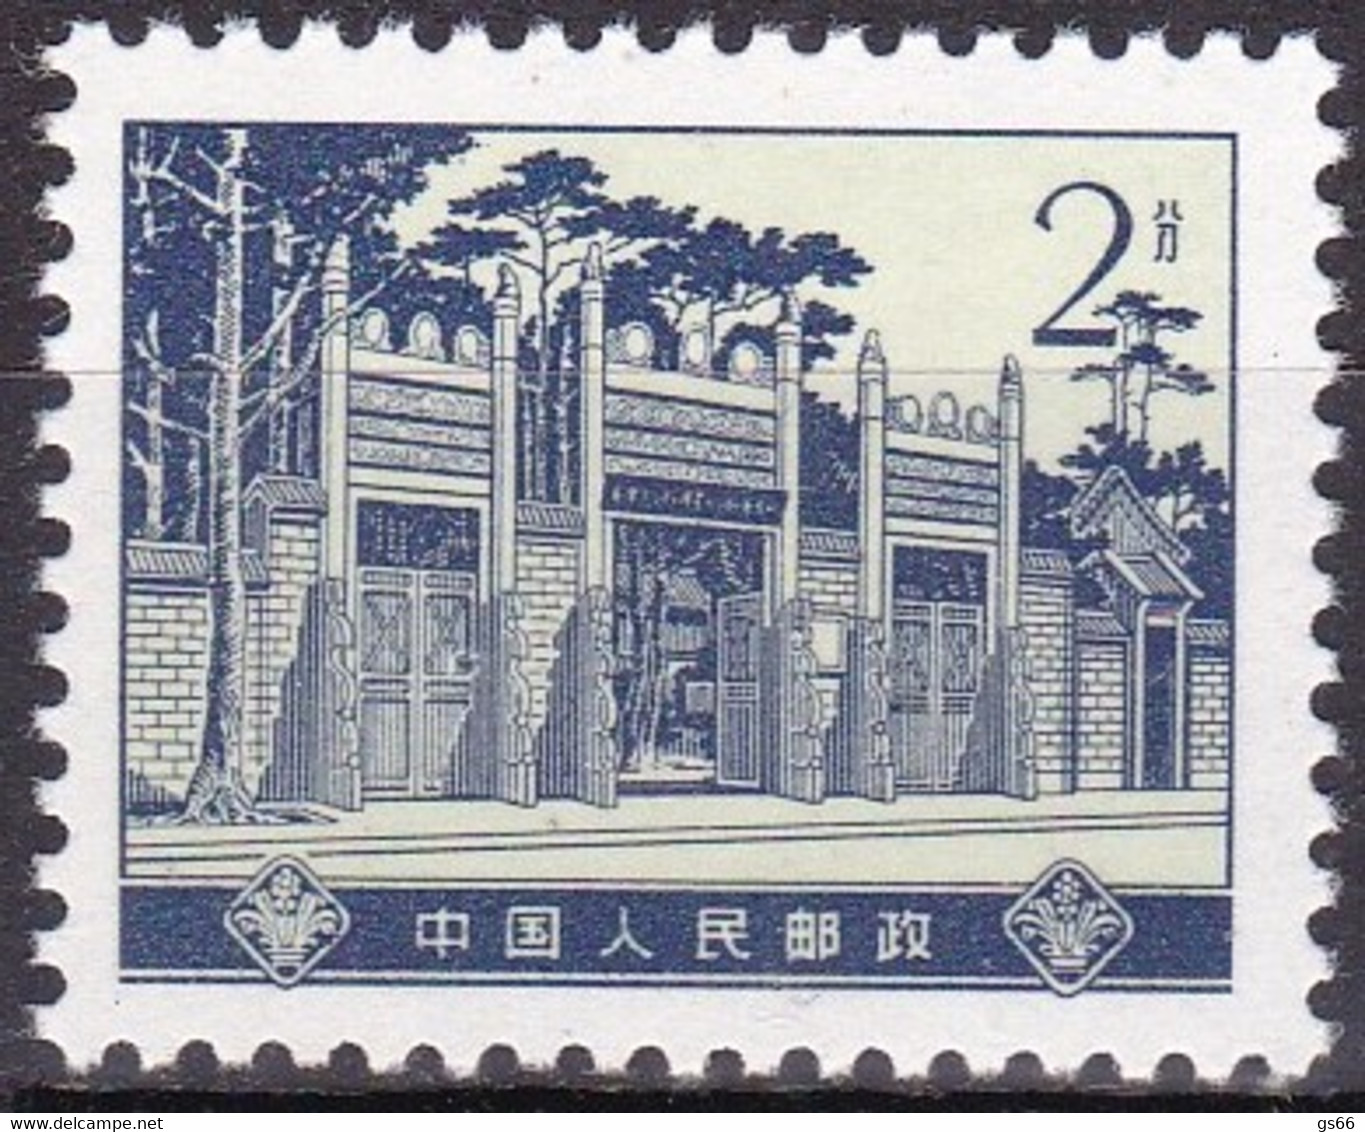 China 1974, Michel 1177, MNH **, Historische Stätten Der Revolution. - Unused Stamps